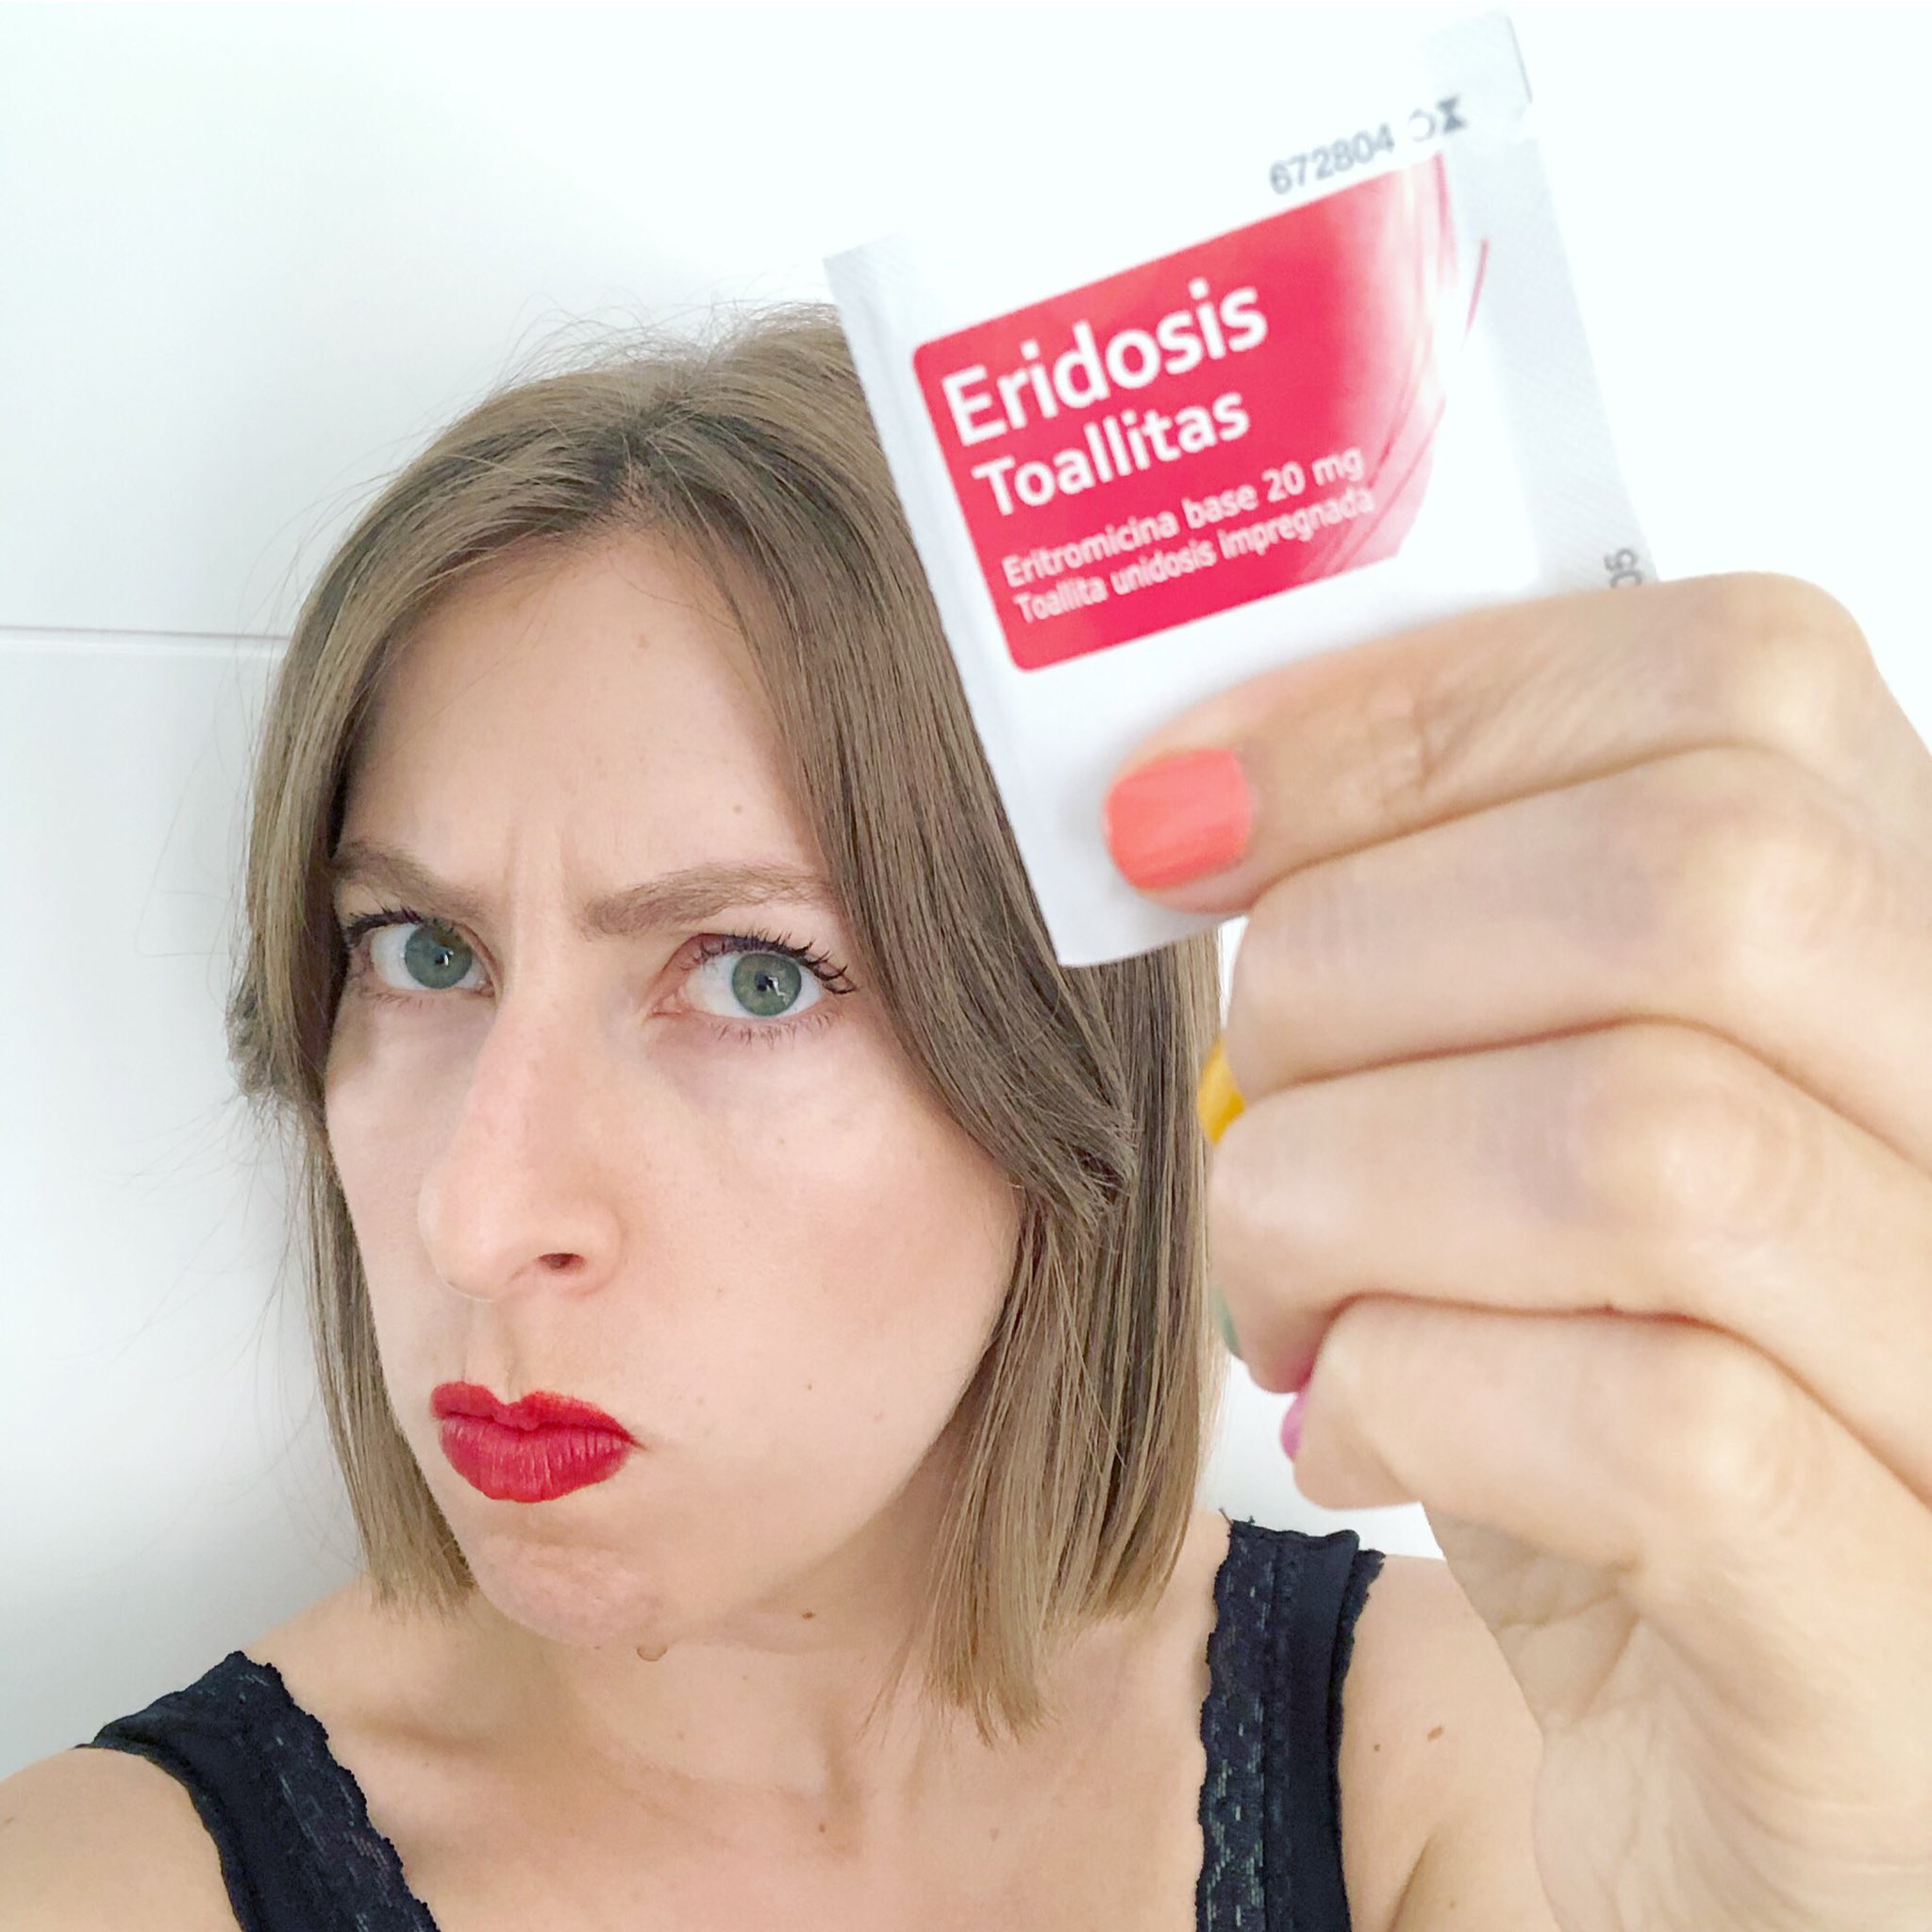 Deborah García Bello on X: ¡Las toallitas Eridosis para el acné son un  medicamento, no un cosmético! 🧶Hilo  / X